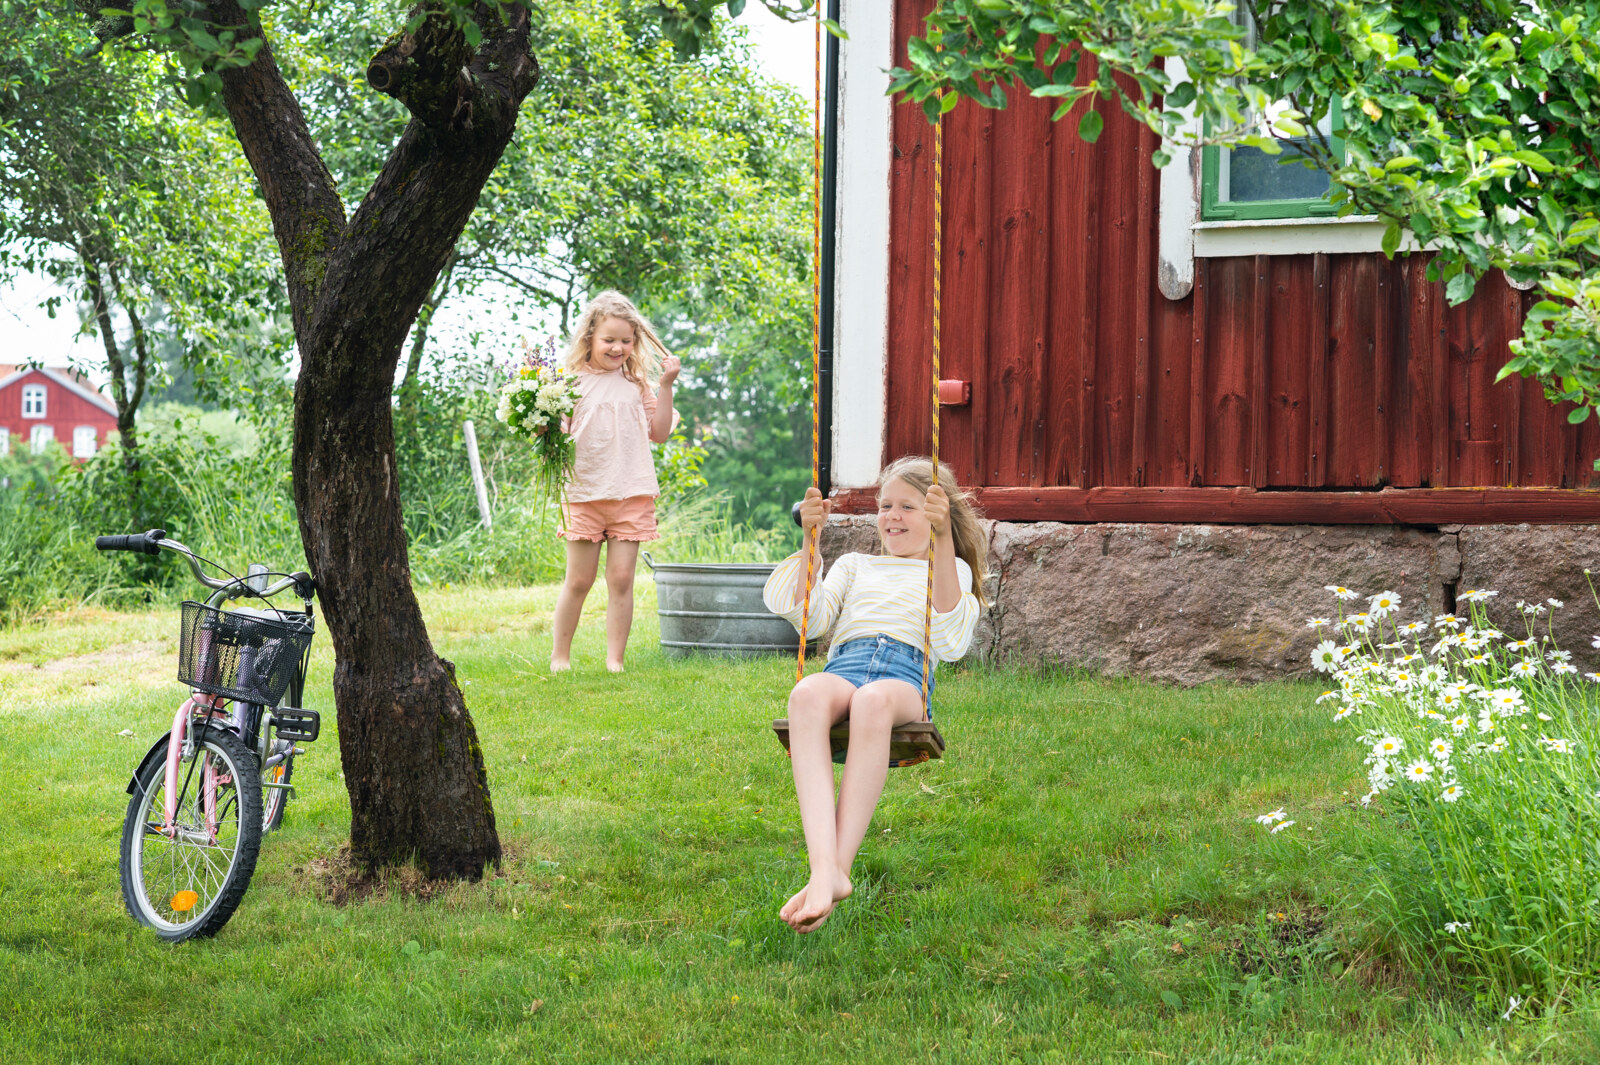 Children playing in the garden.